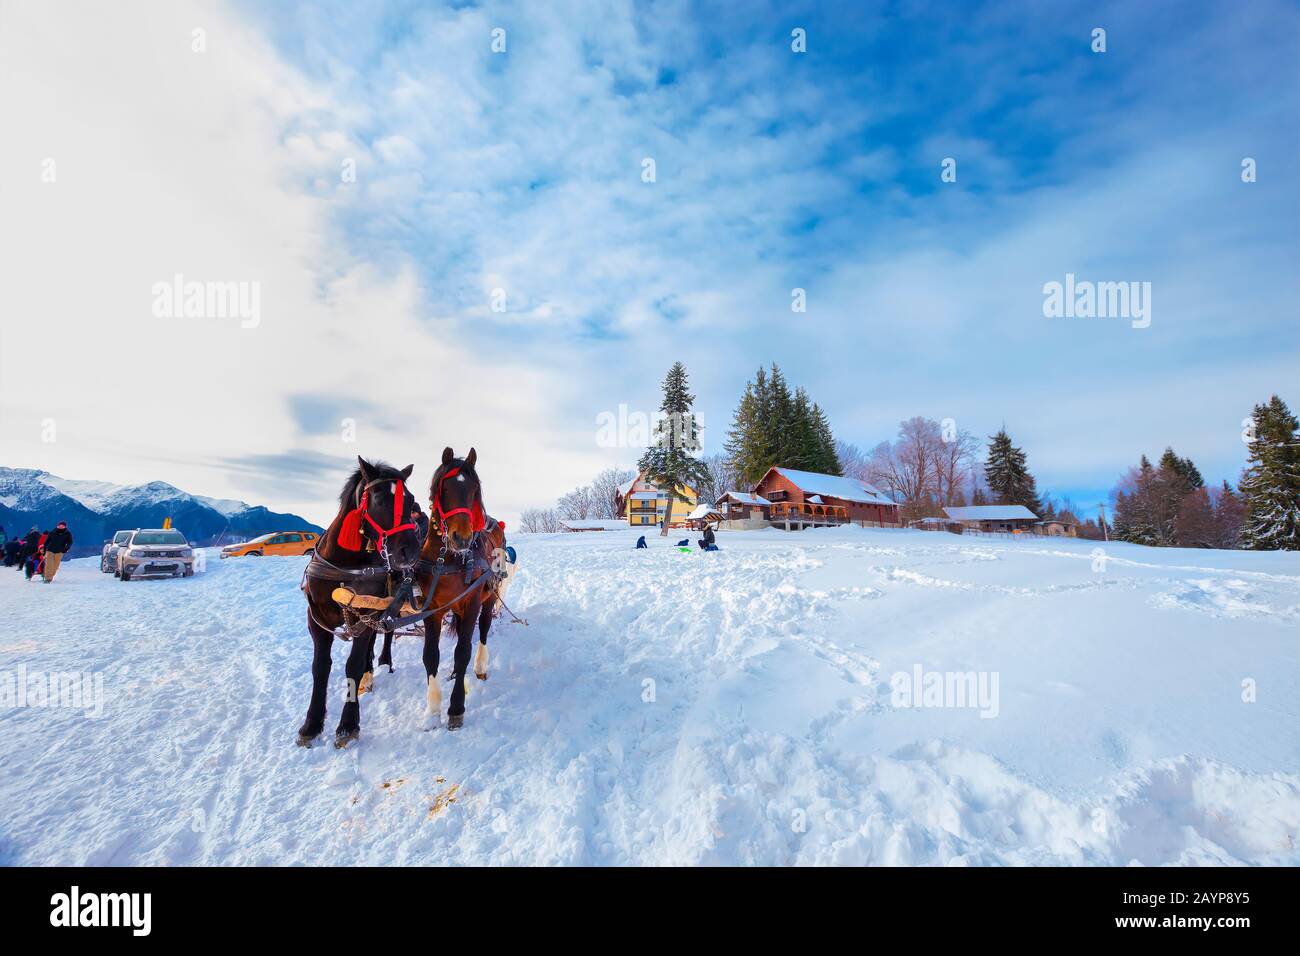 Fantastische Atmosphäre im Tei Brazi Chalet im Winter in 1120 Meter Höhe und 5 km vom Skigebiet Predeal, Bucegi Mountains, Rumänien Stockfoto